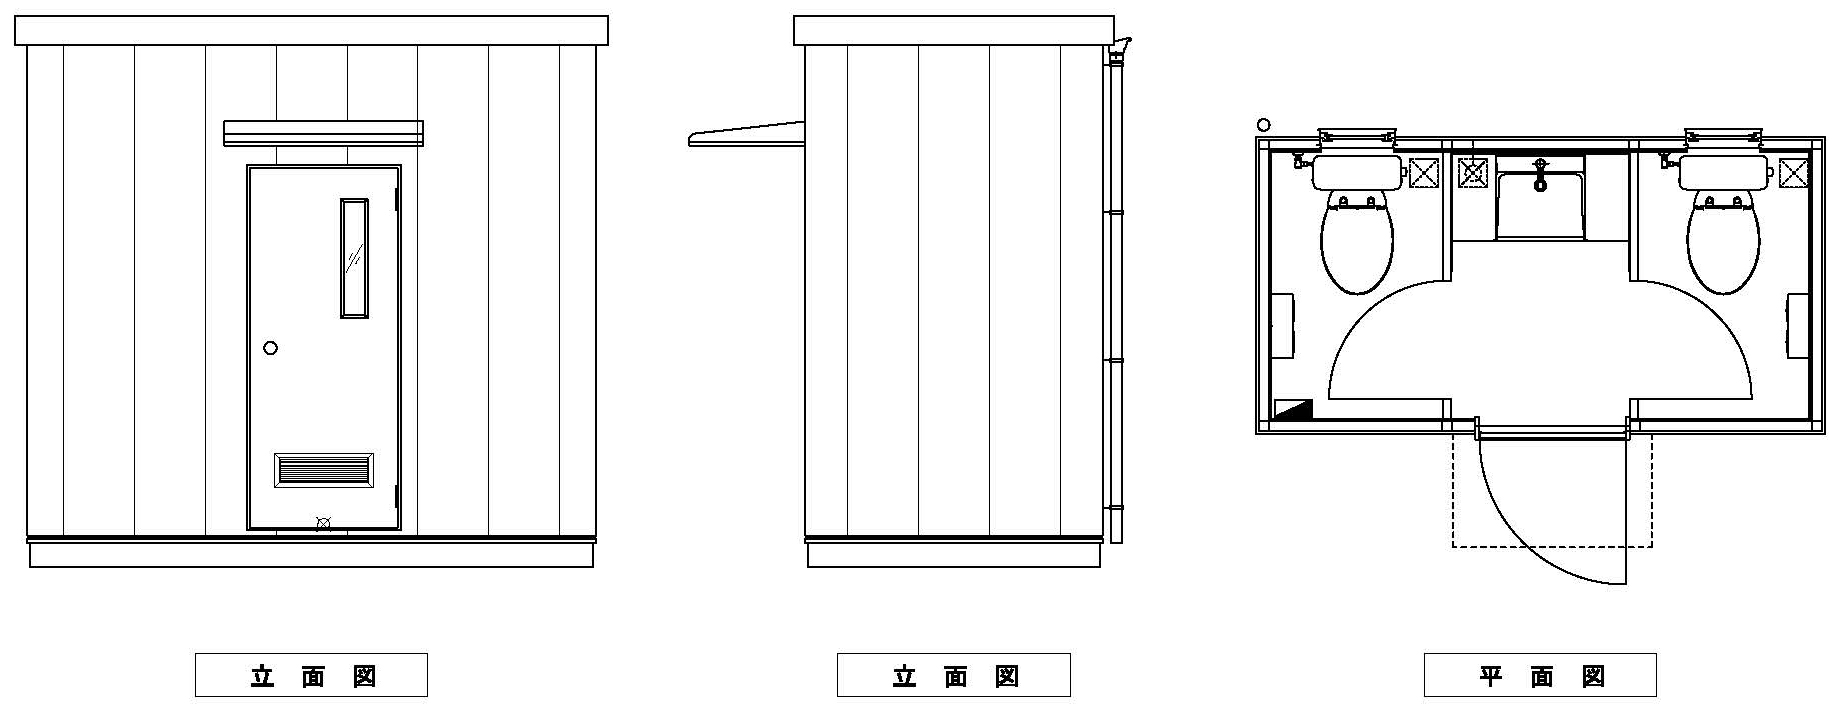 世田谷区立上北沢器材置場にユニットトイレを納入しました。